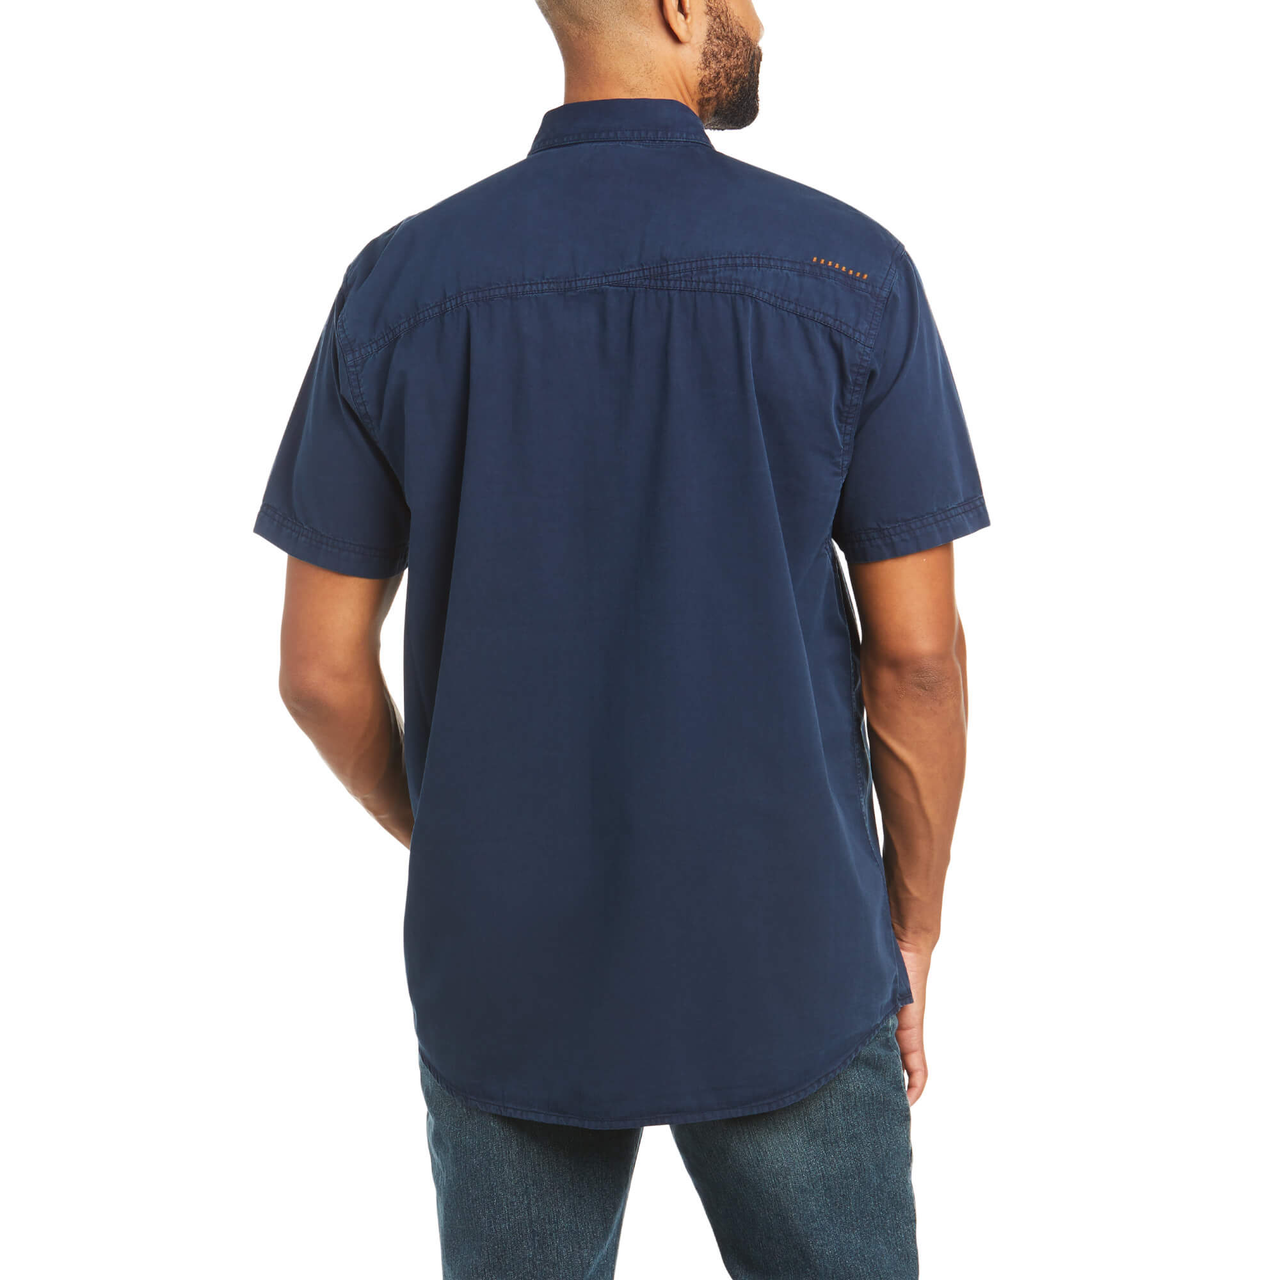 Ariat Men's Rebar Washed Twill Work Shirt Navy 10035415